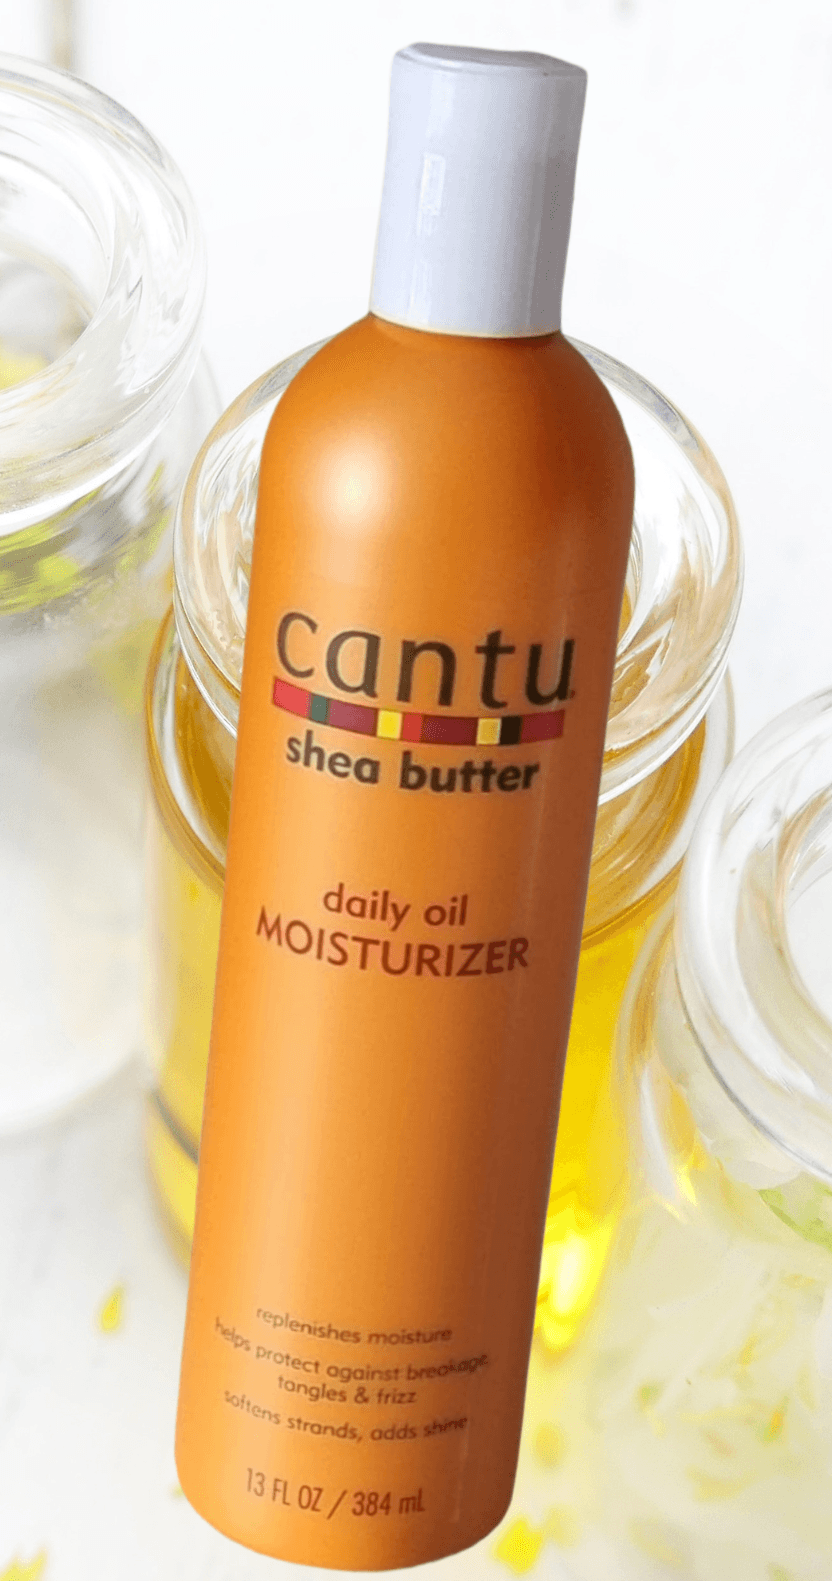 Cantu Shea Butter Daily Oil Moisturizer - LocsNco